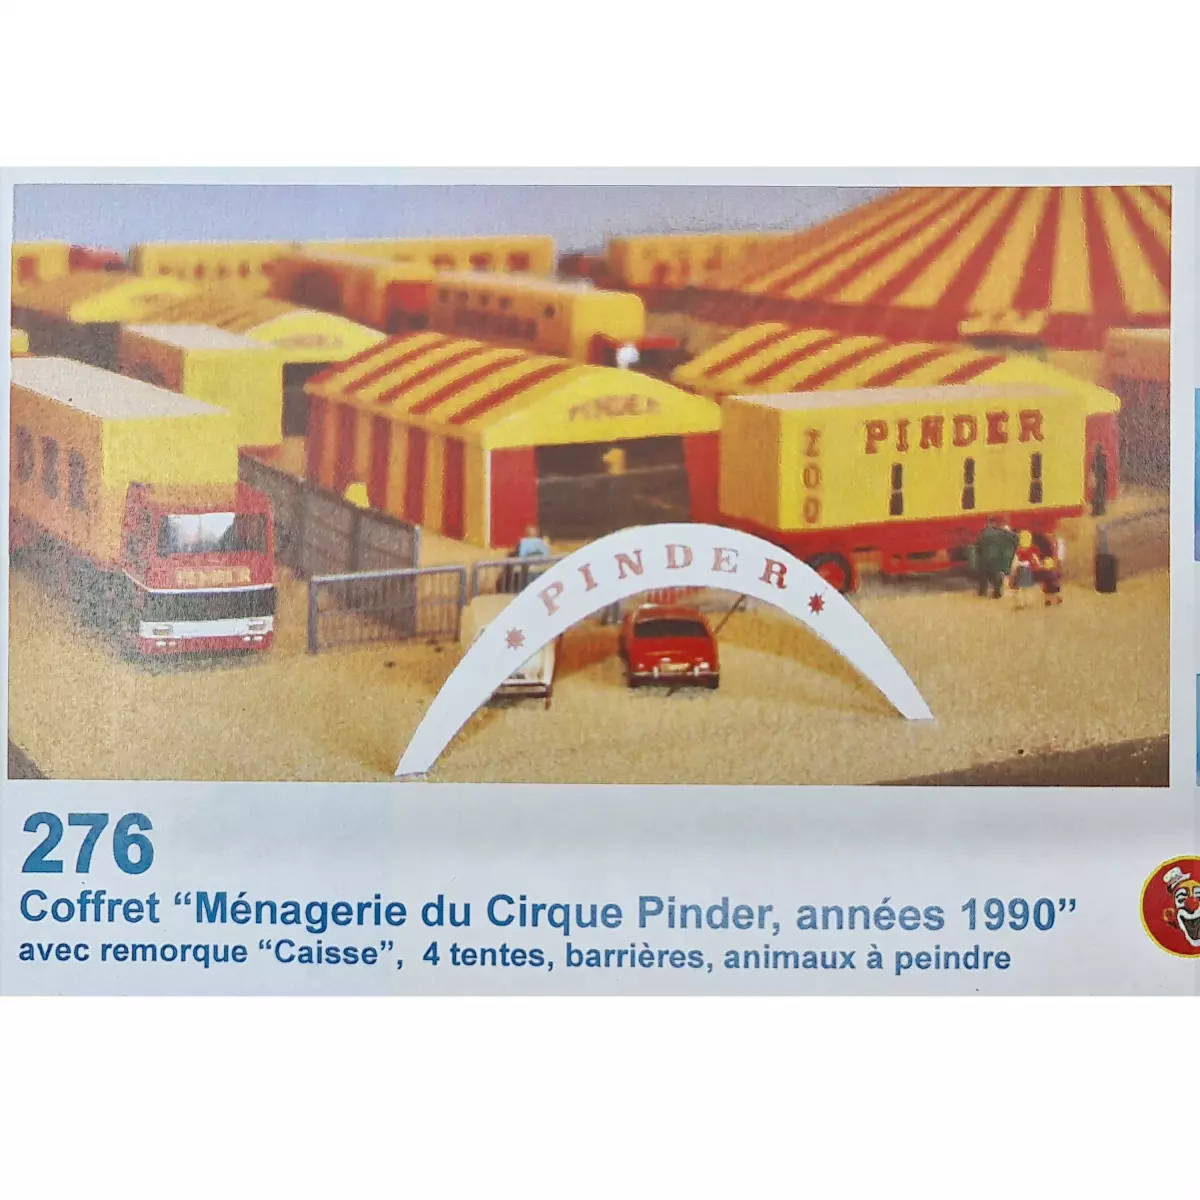 Coffret Ménagerie du Cirque Pinder "Années 1990" Sai 276 - HO : 1/87